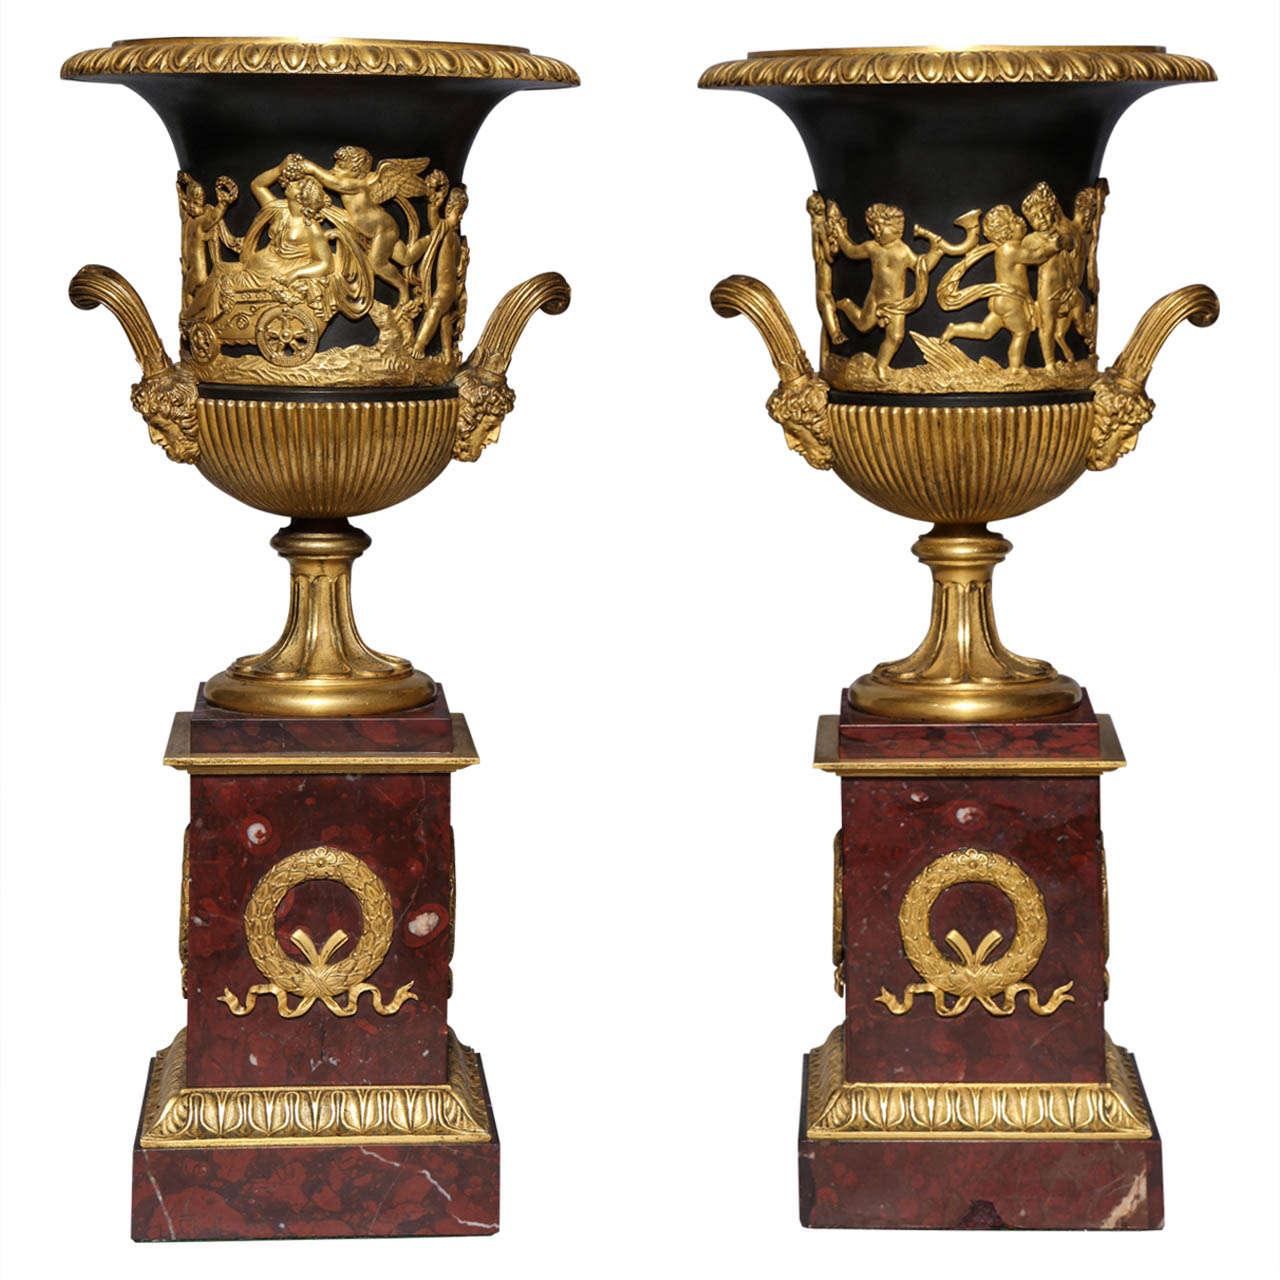 Paire de vases néoclassiques français en bronze doré, bronze patiné et marbre rouge